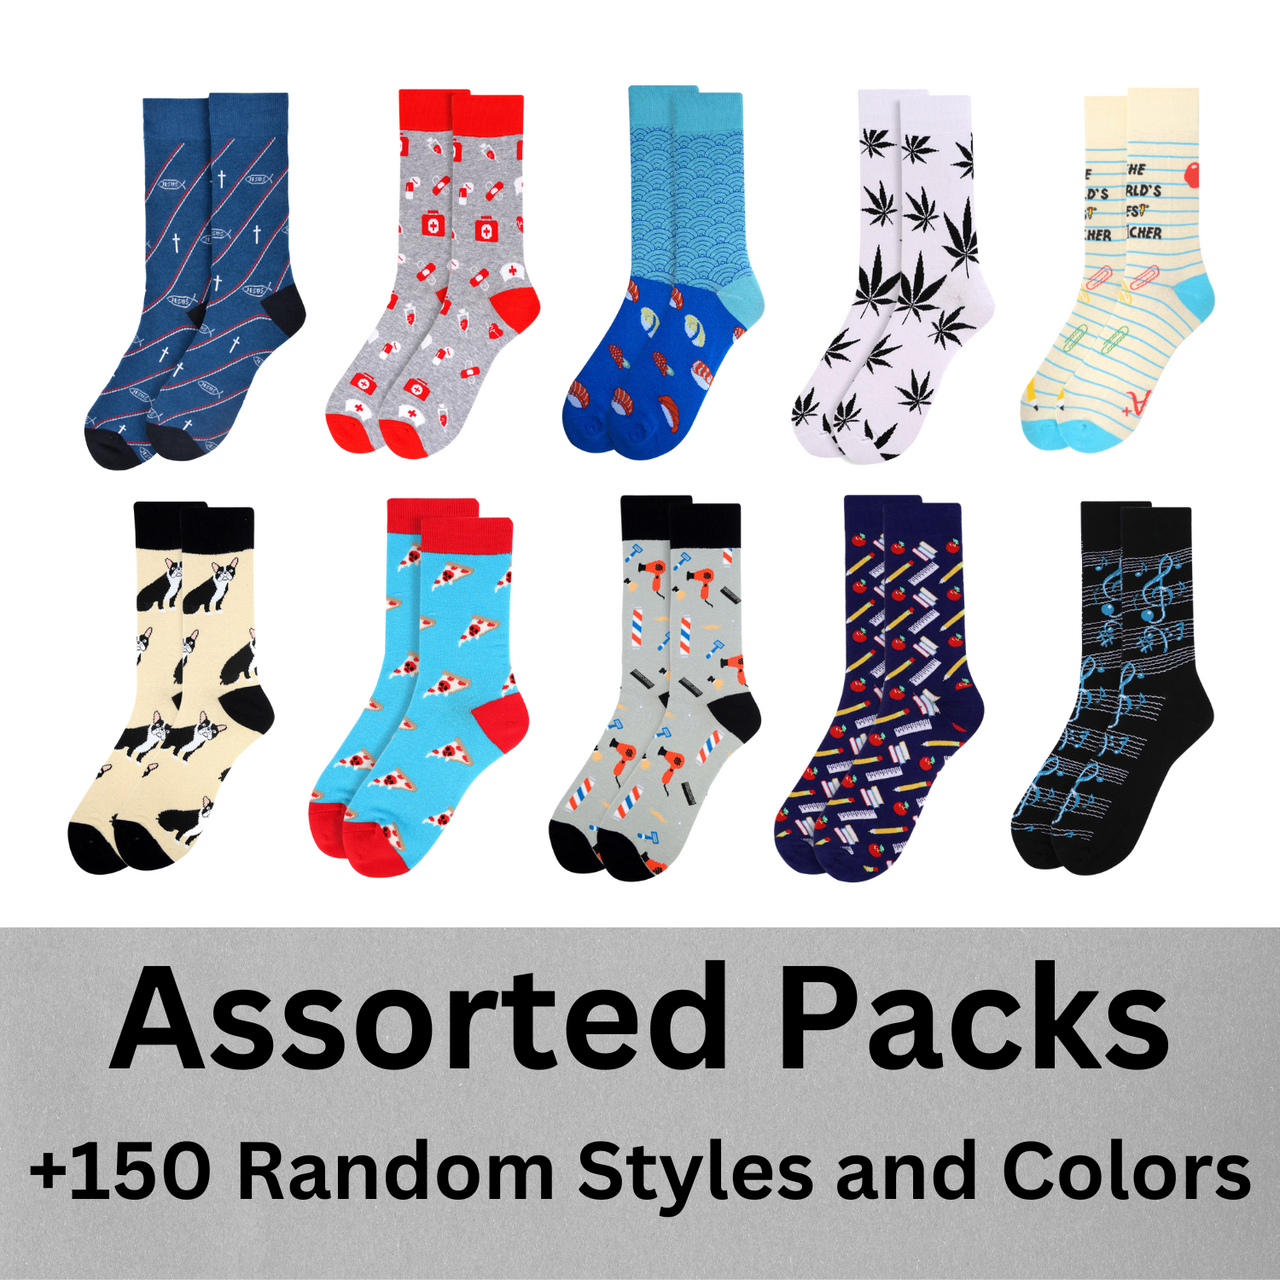 RANDOMLY Assorted Men's Novelty Socks (Min. 50 pairs)